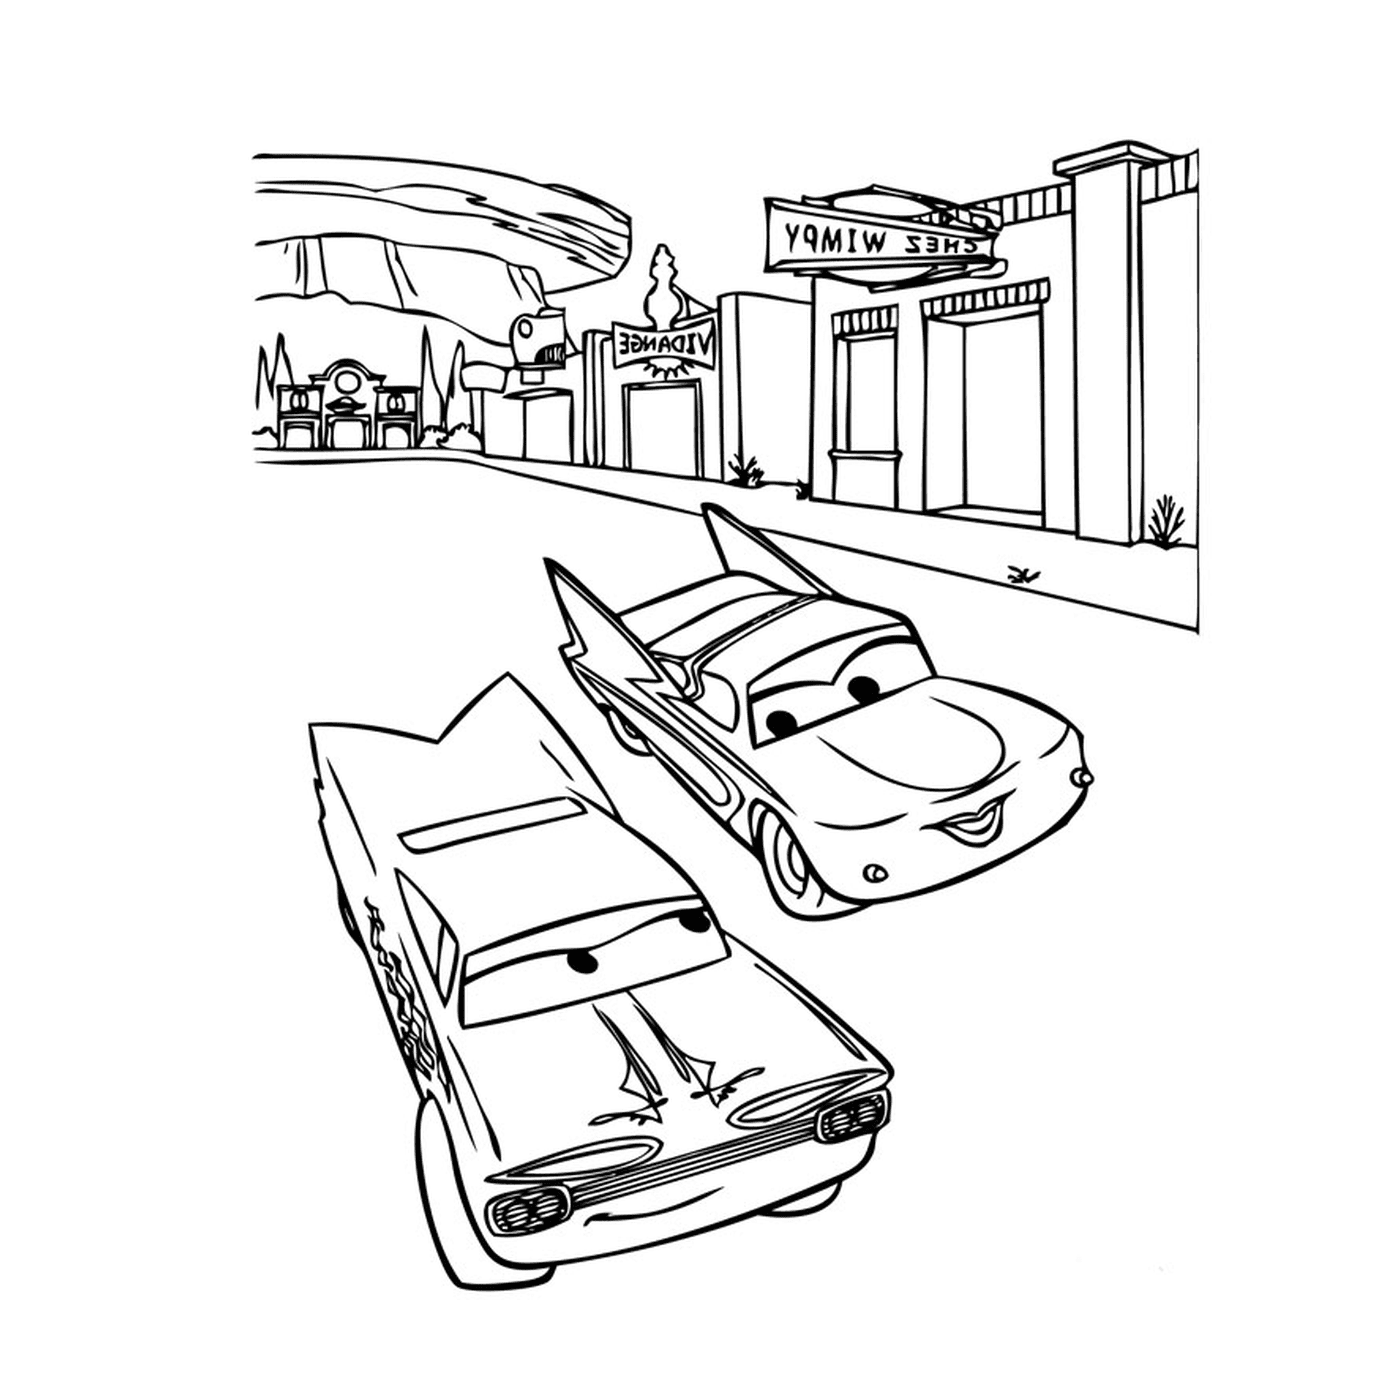  Cars on a street 